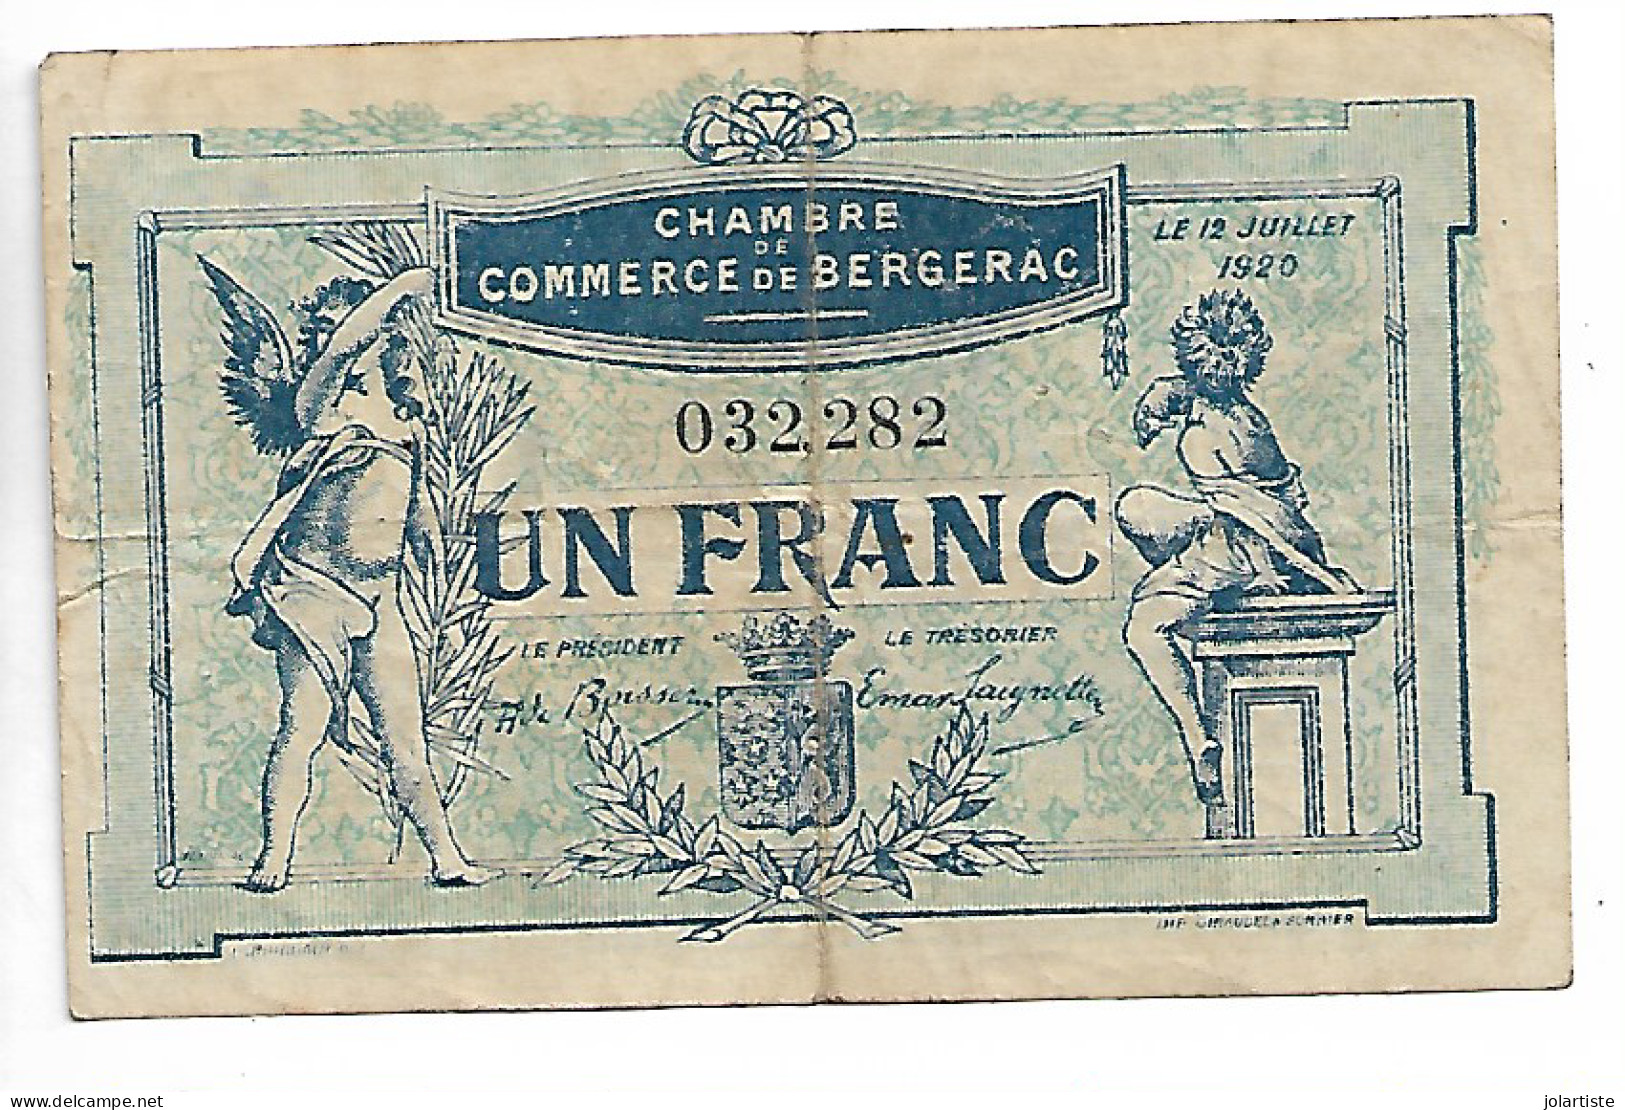 Chambre  De Commerce De Bergerac Un Franc 1920 Dimension 97 Mm X 63 Mm N0166 - Chambre De Commerce